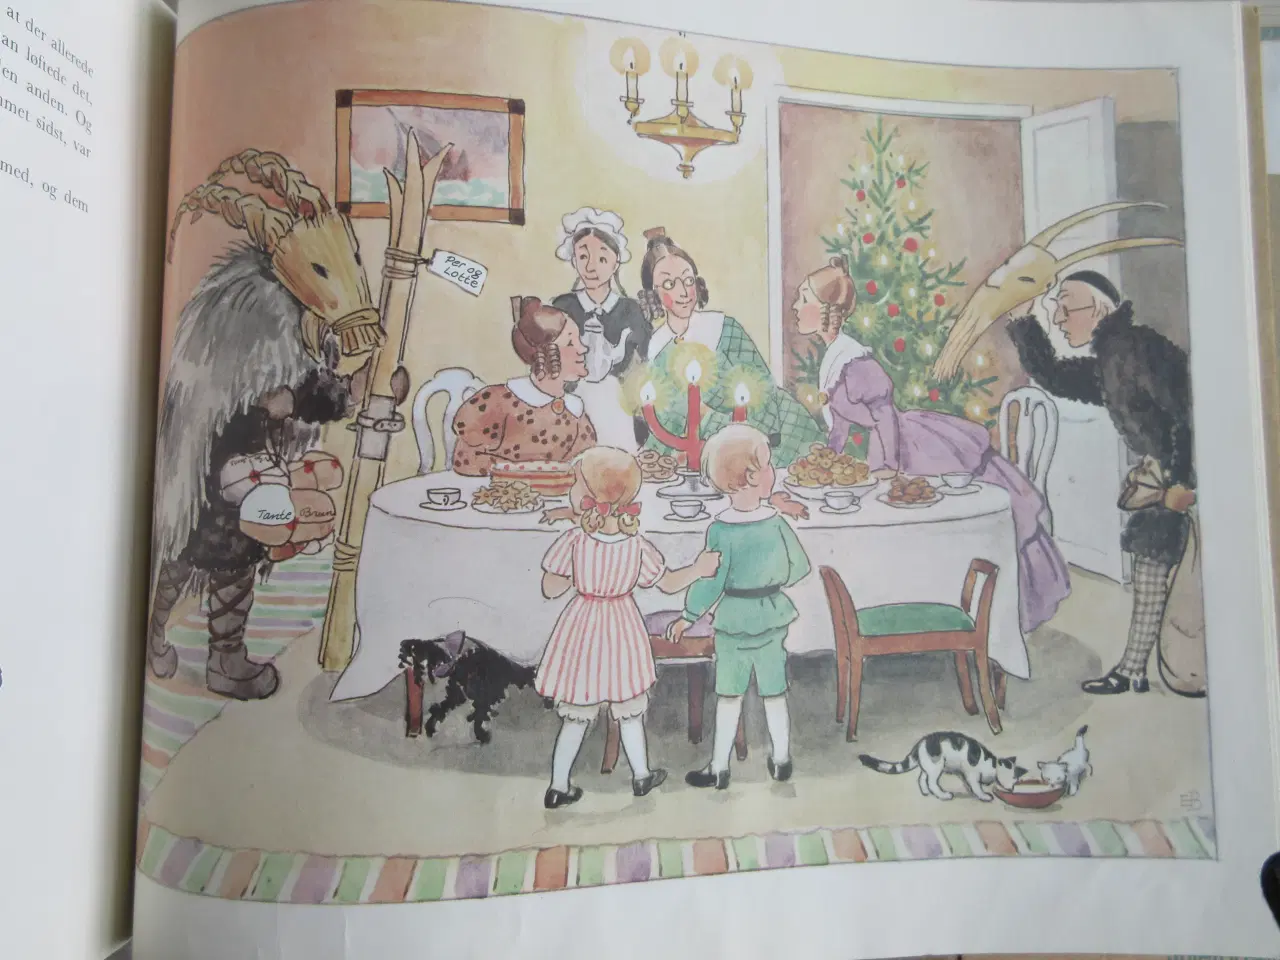 Billede 9 - Pers og Lottes jul - af Elsa Beskow ;-)